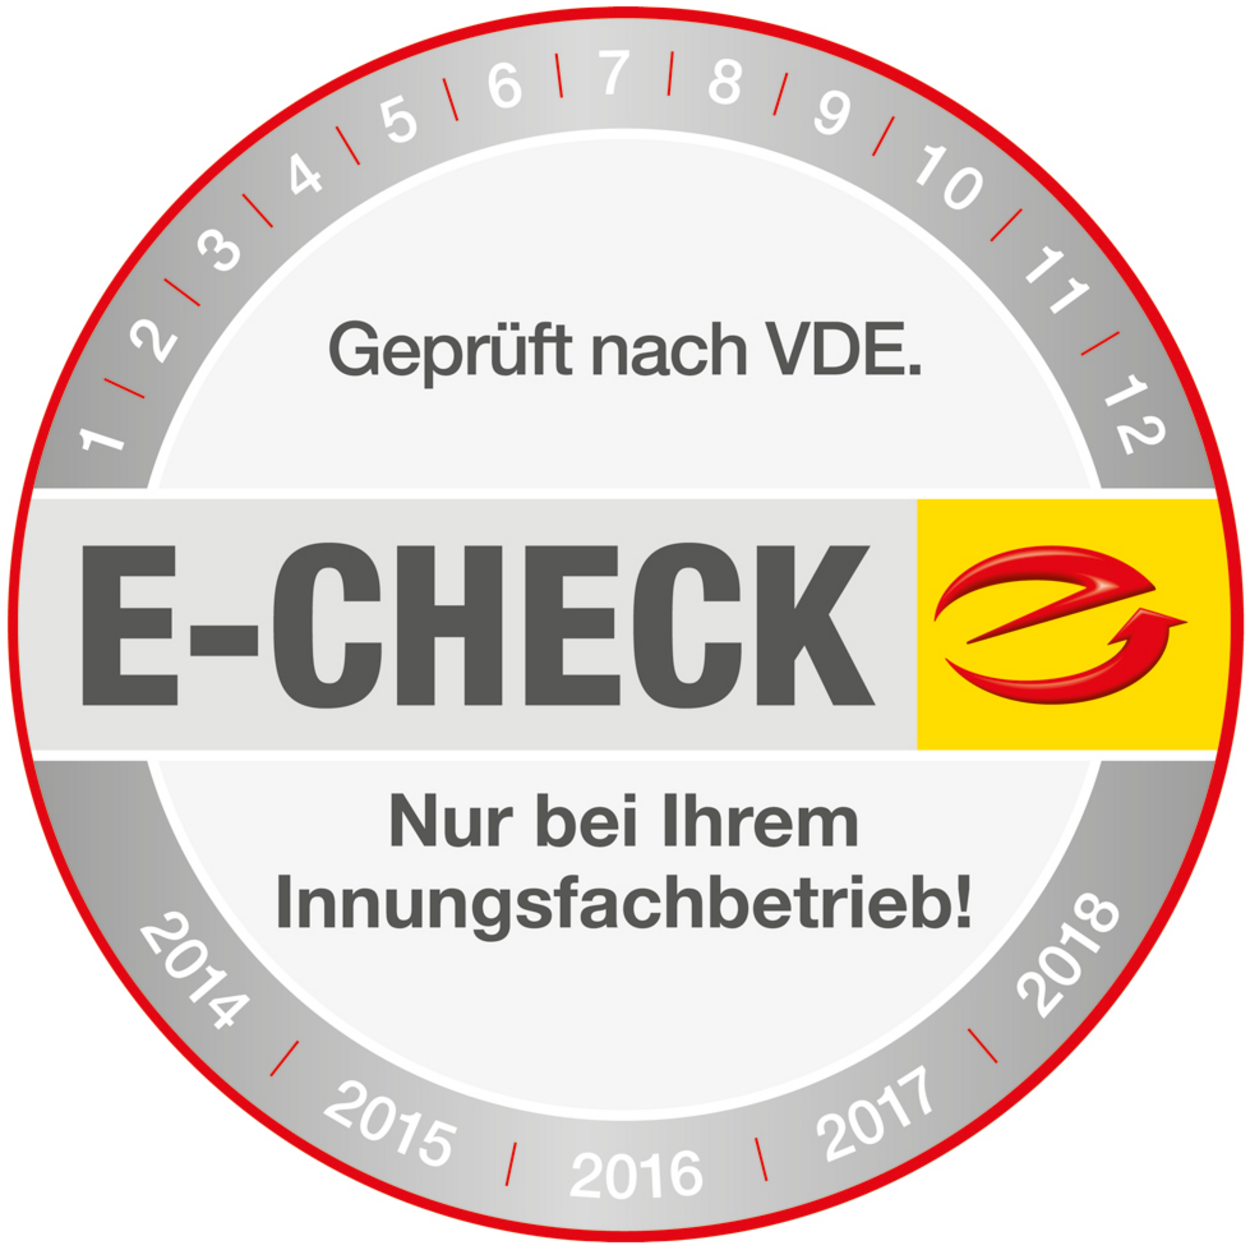 Der E-Check bei Elektro Kunert e.K. in Lauchhammer